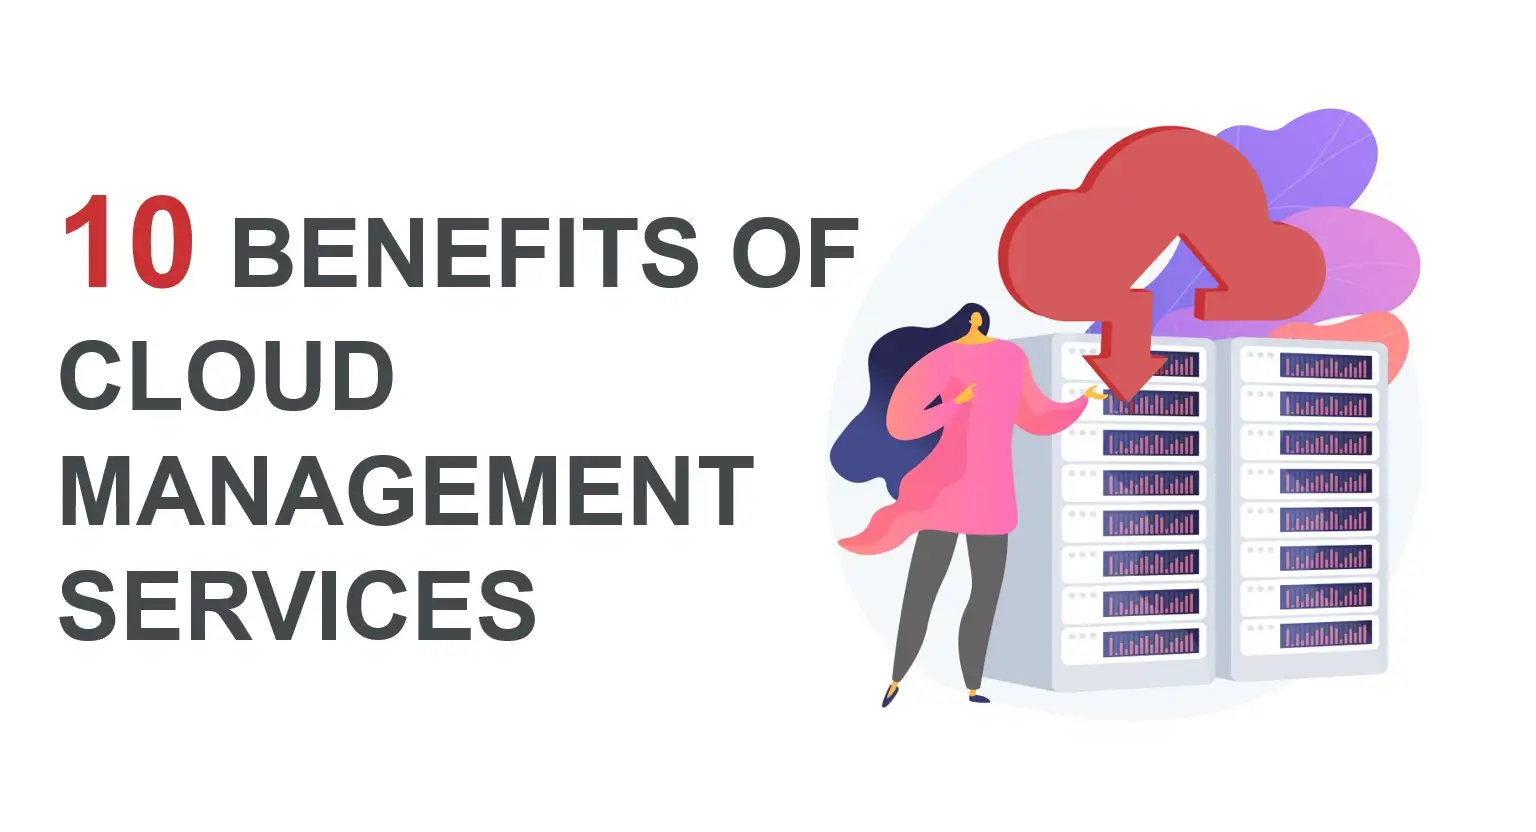 10 Benefits of Cloud Management Services